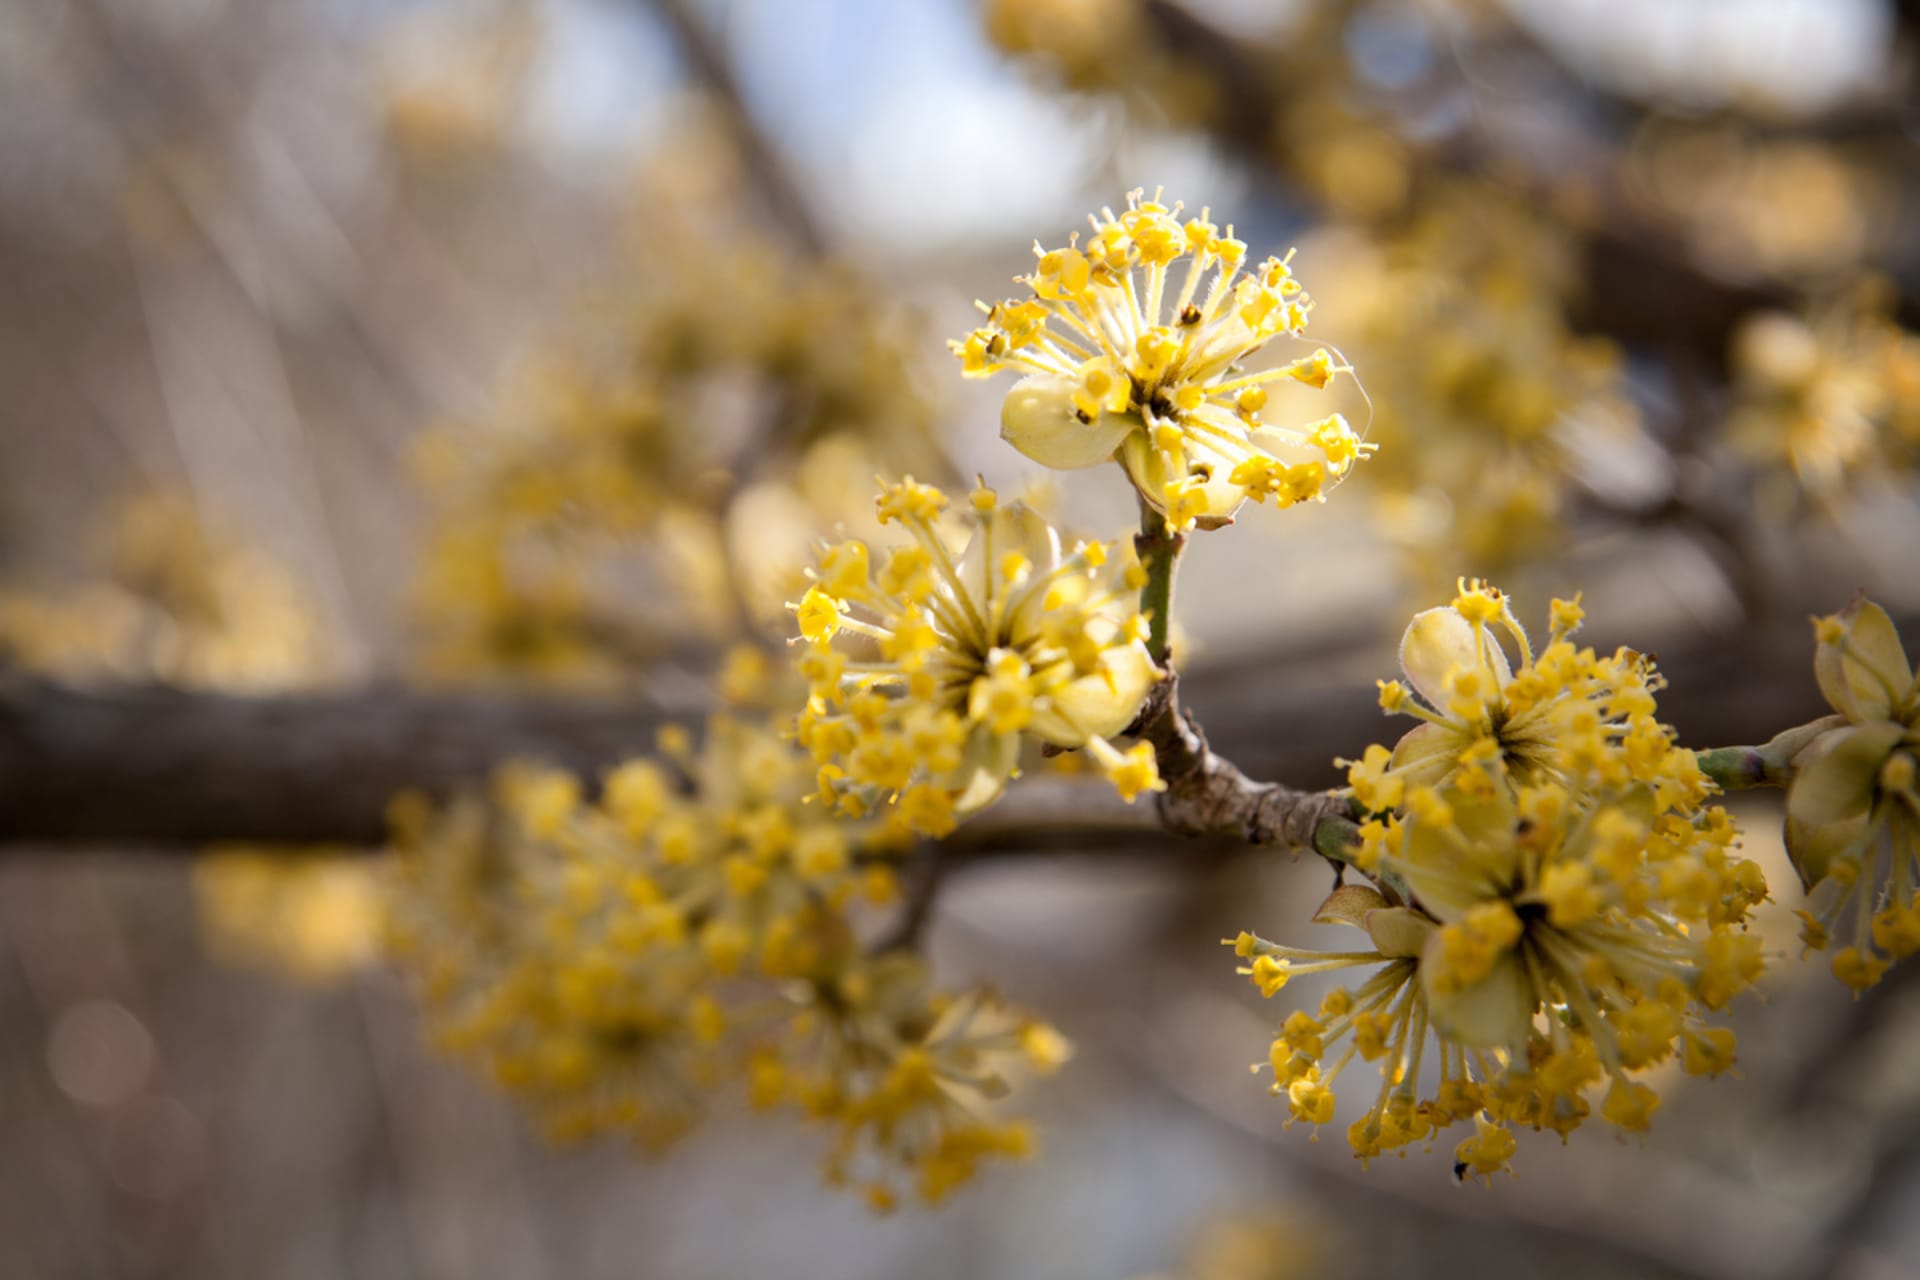 Dřín obecný vykvétá  brzy na jaře, už v březnu, ještě před olistěním keře. Květy jsou velmi výrazné, žluté a poskytují první potravu pro hmyz.